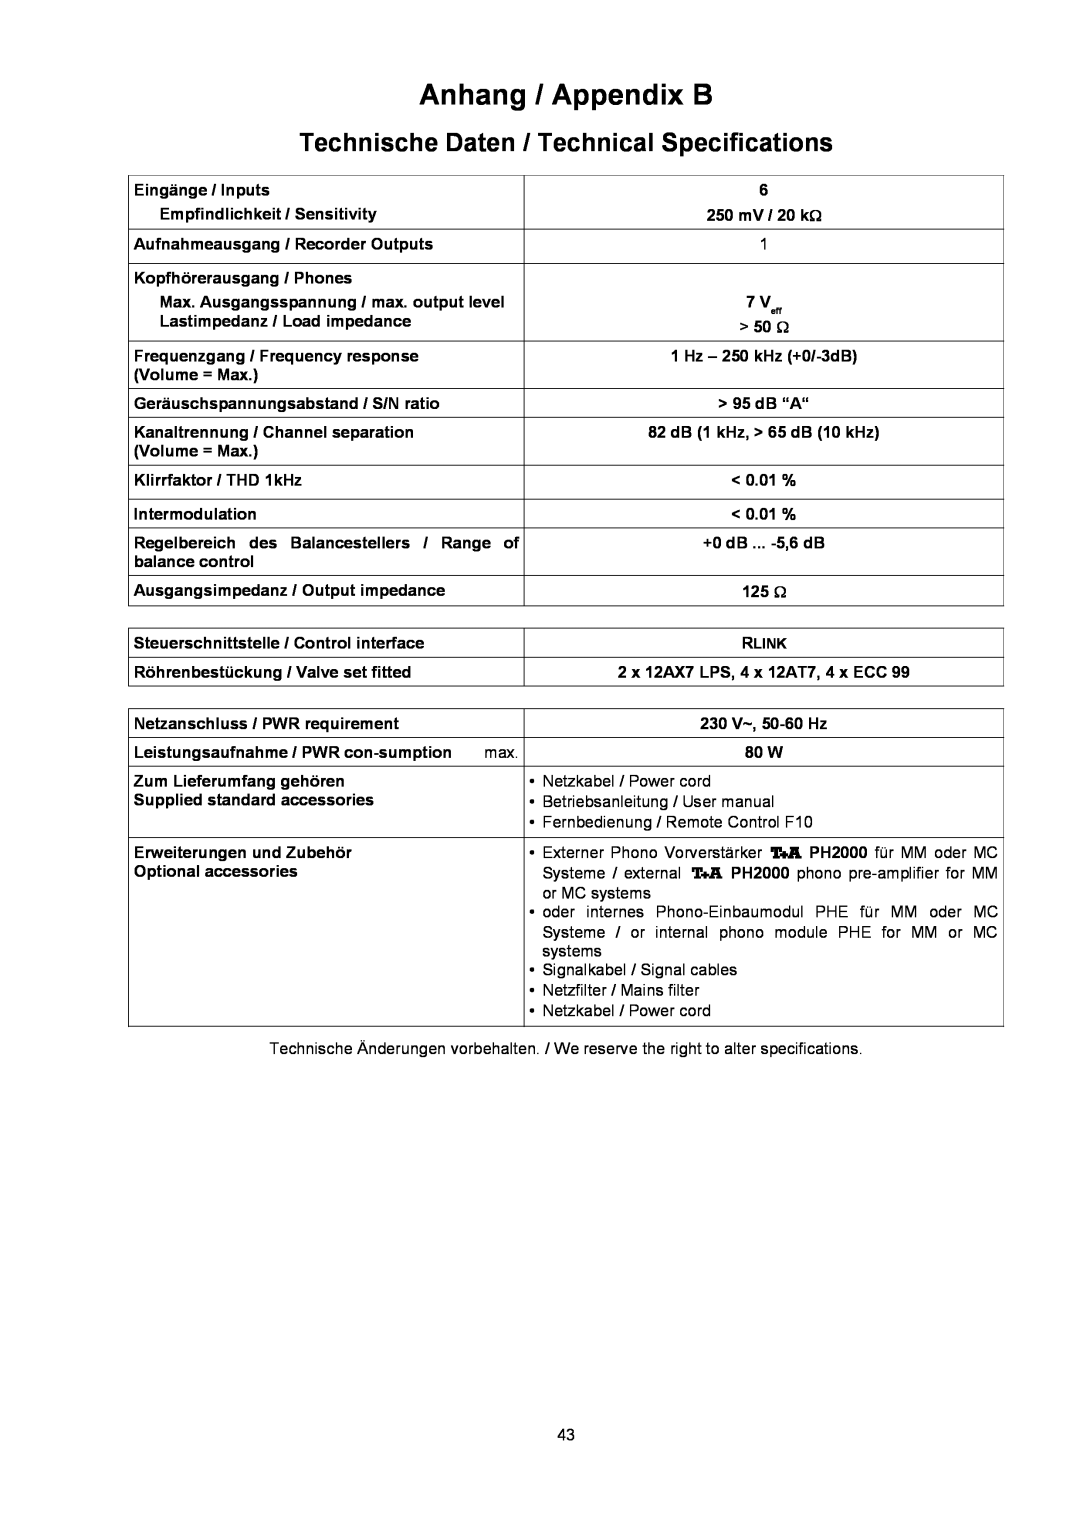 T+A Elektroakustik P 10 user manual TechnischeDaten/TechnicalSpecifications, Anhang/AppendixB 